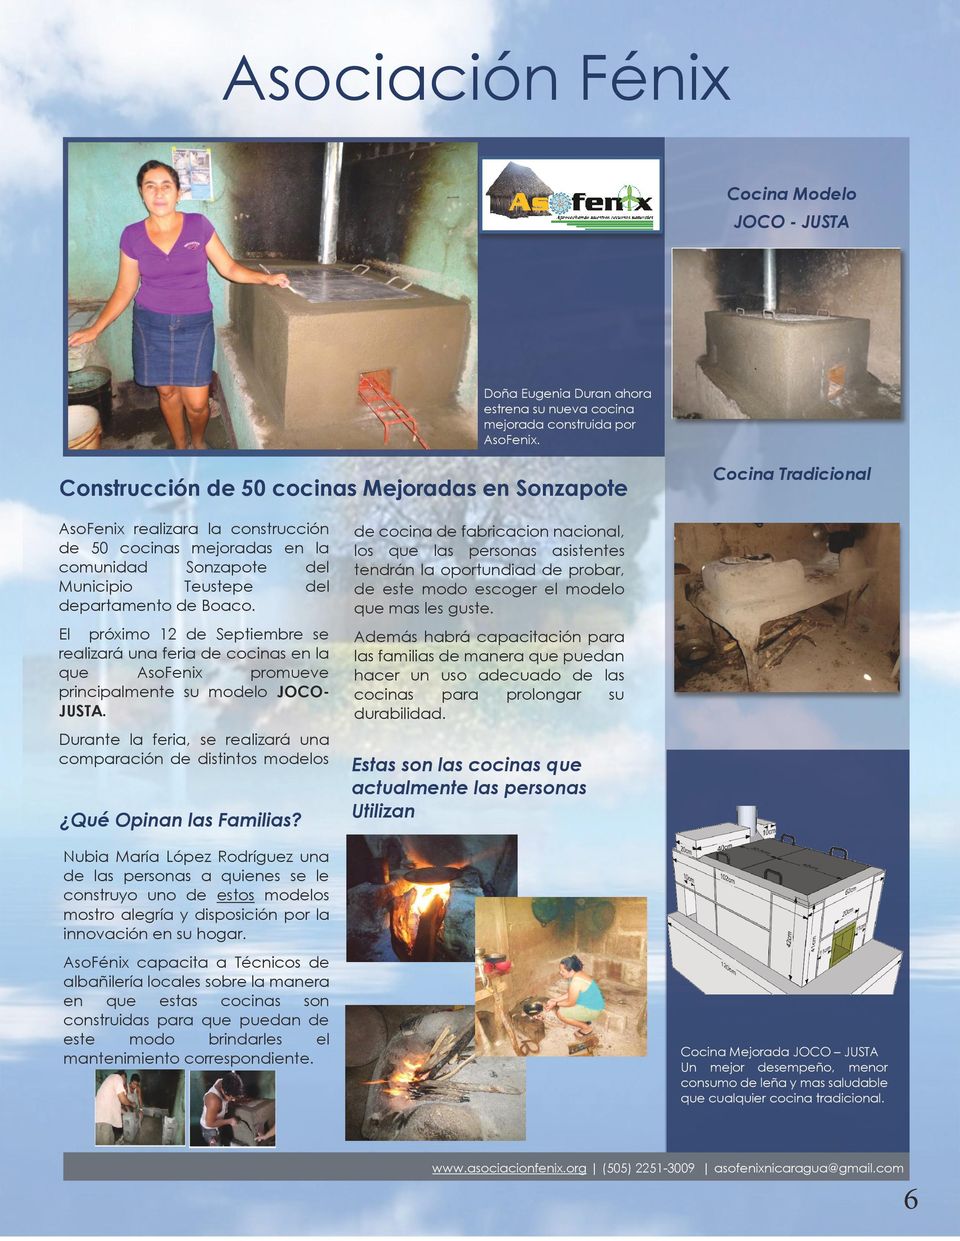 AsoFenix realizara la construcción de 50 cocinas mejoradas en la comunidad Sonzapote del Municipio Teustepe del departamento de Boaco.